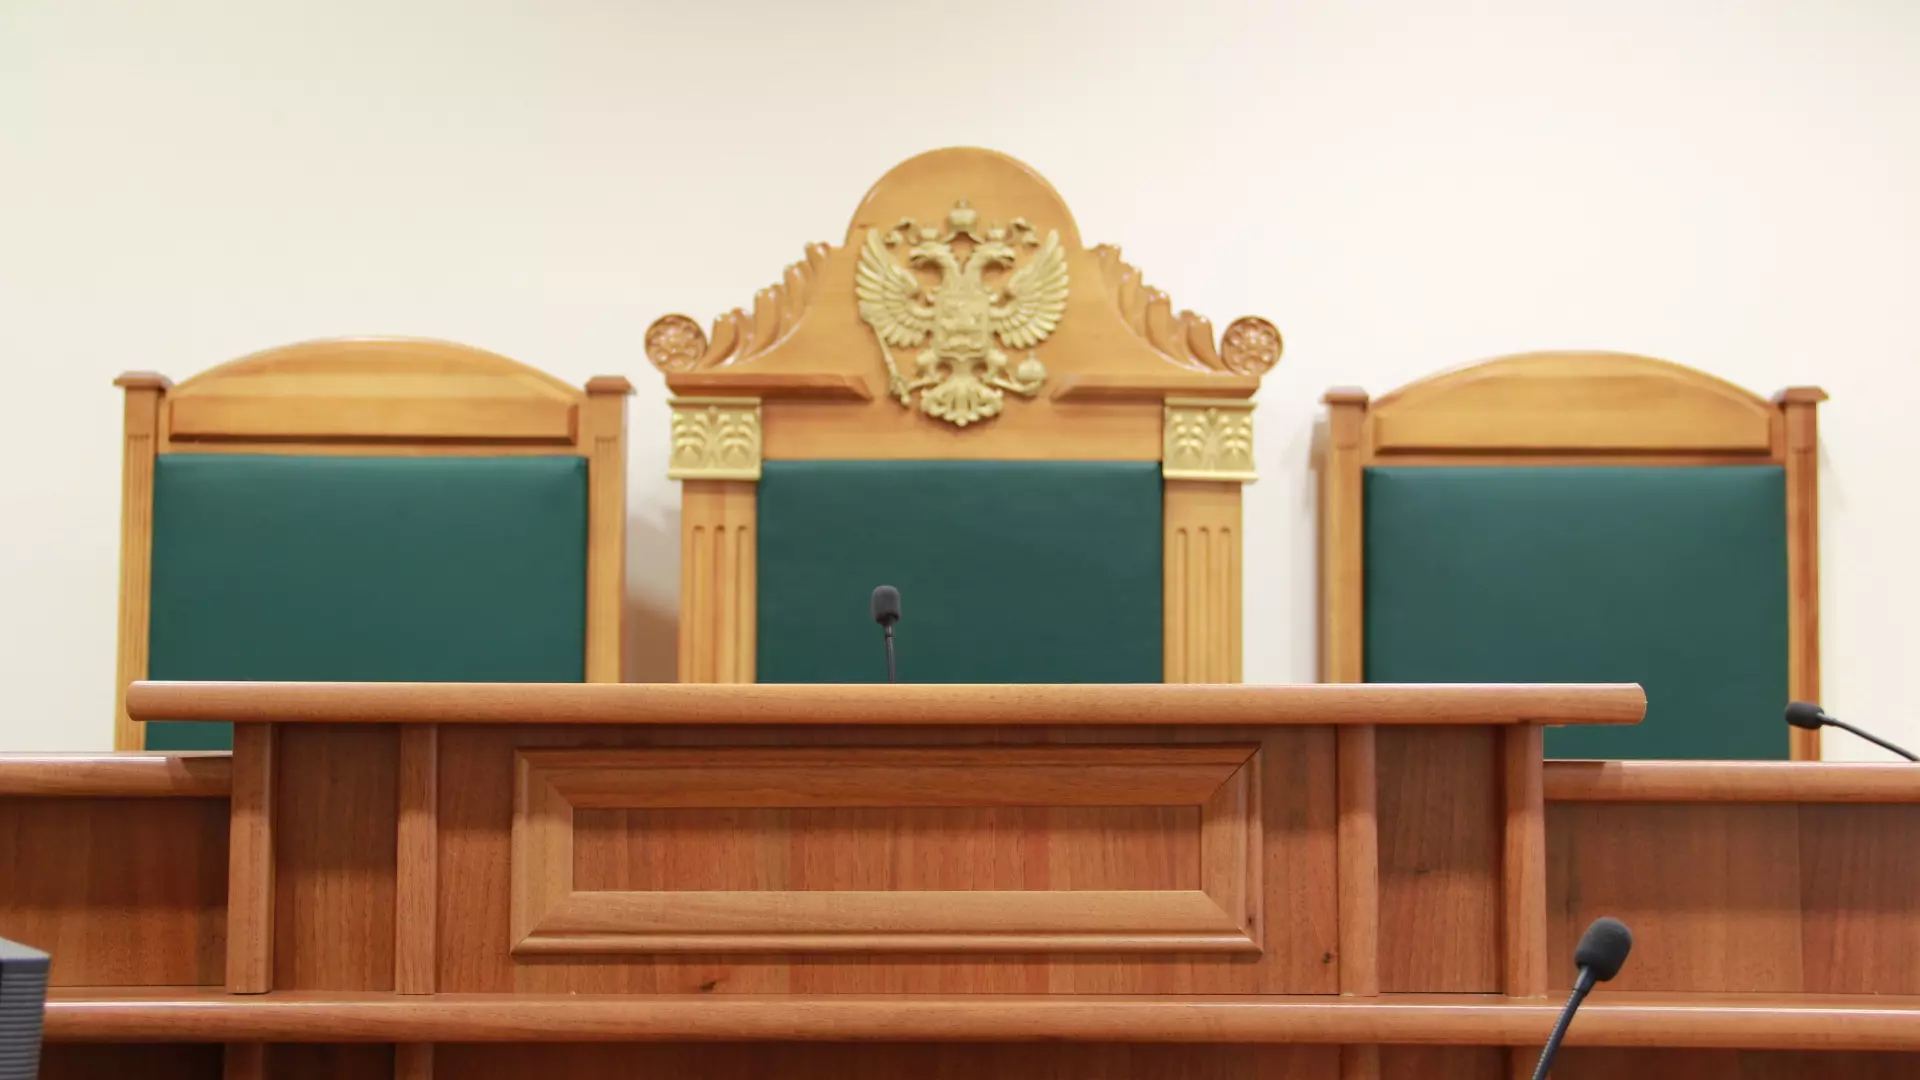 Сыну бывшего замглавы Ханты-Мансийска вынесли приговор по делу о наркосбыте